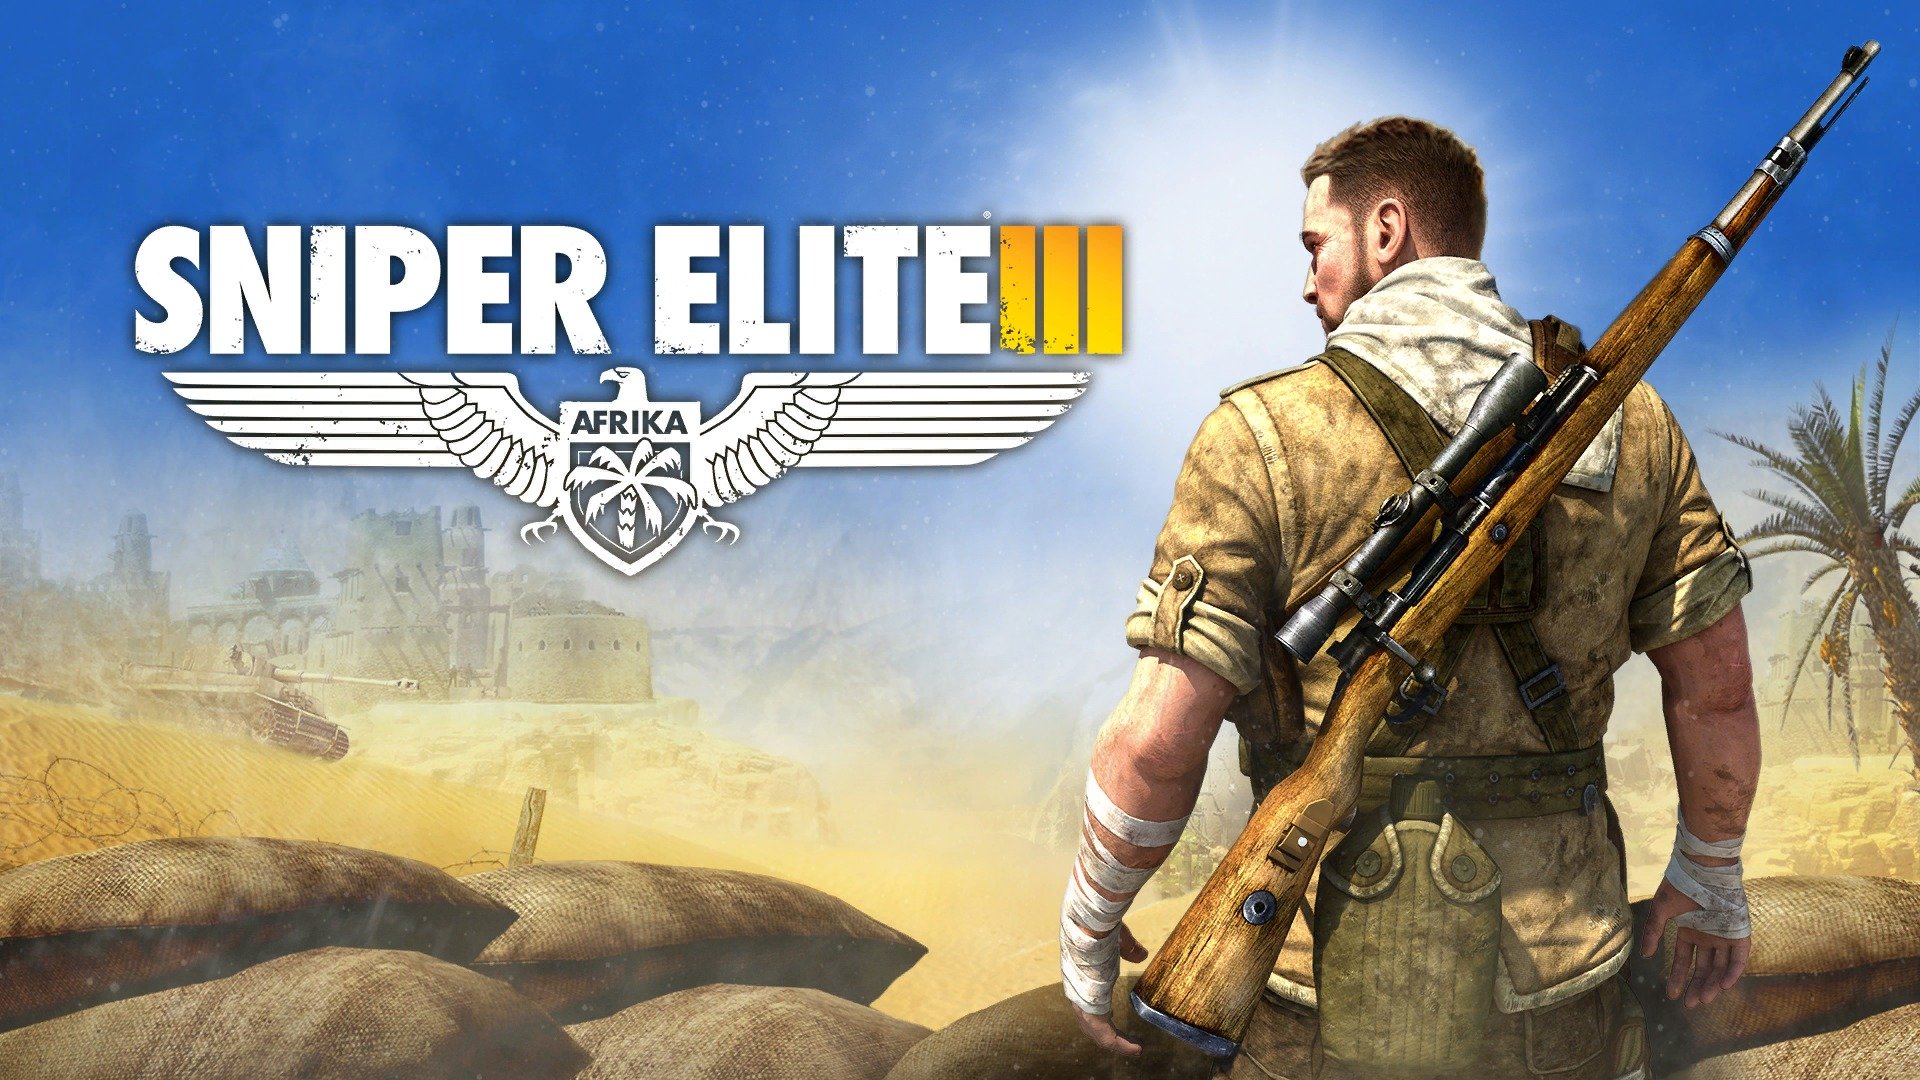 Best 47 Sniper Elite III Wallpaper on HipWallpaper Elite